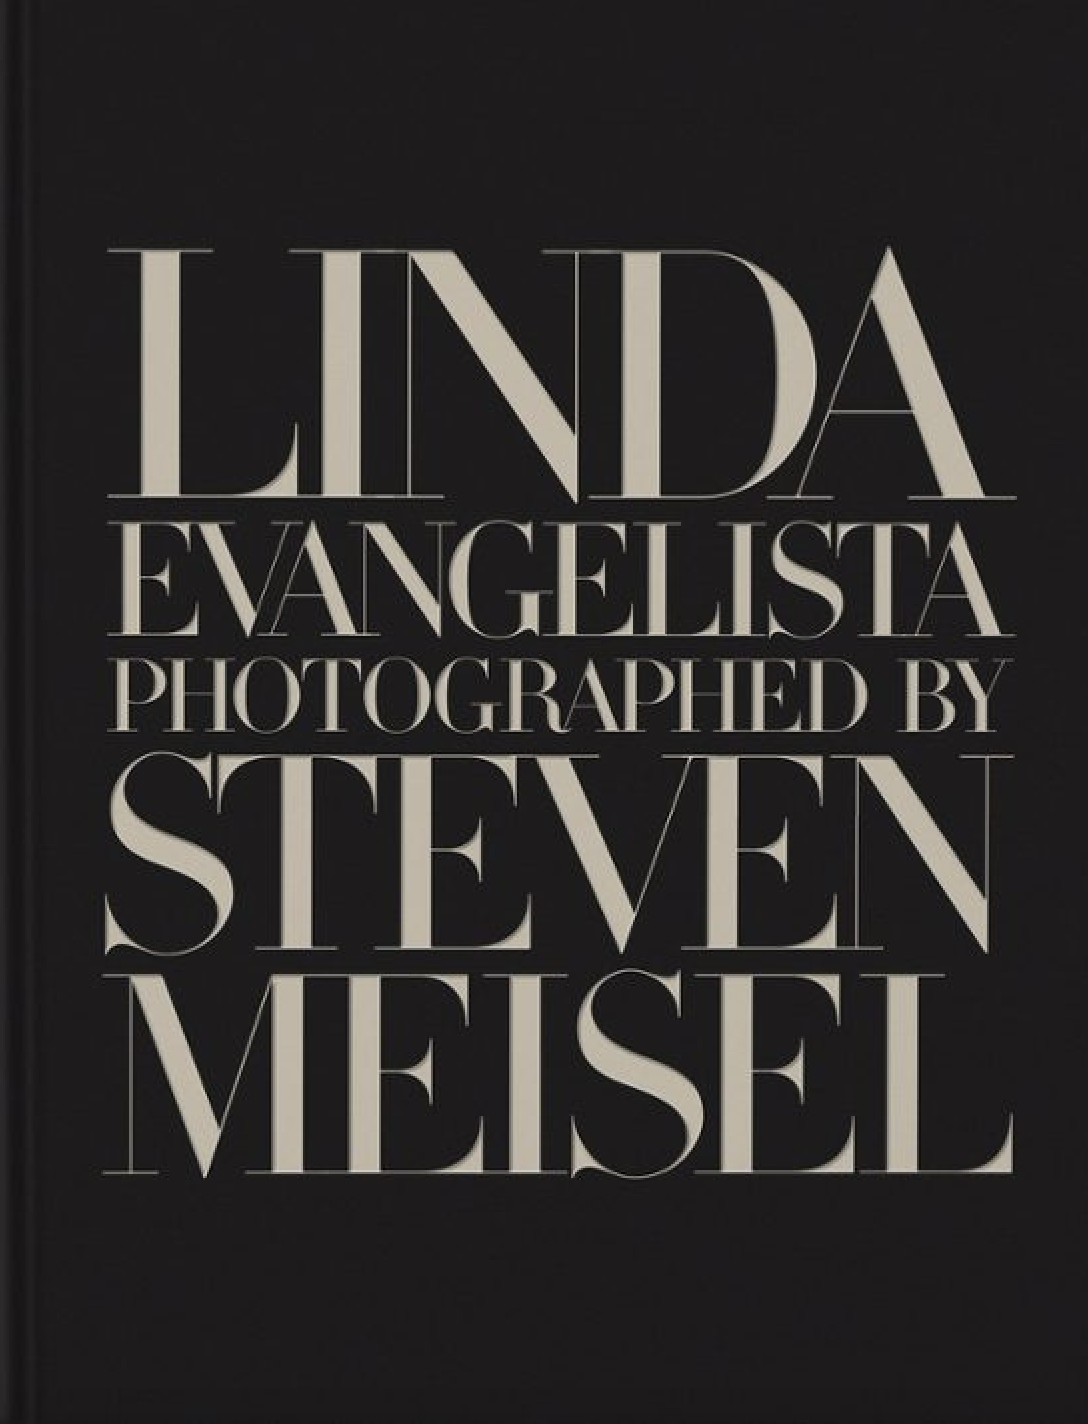 Steven Meisel y Linda Evangelista